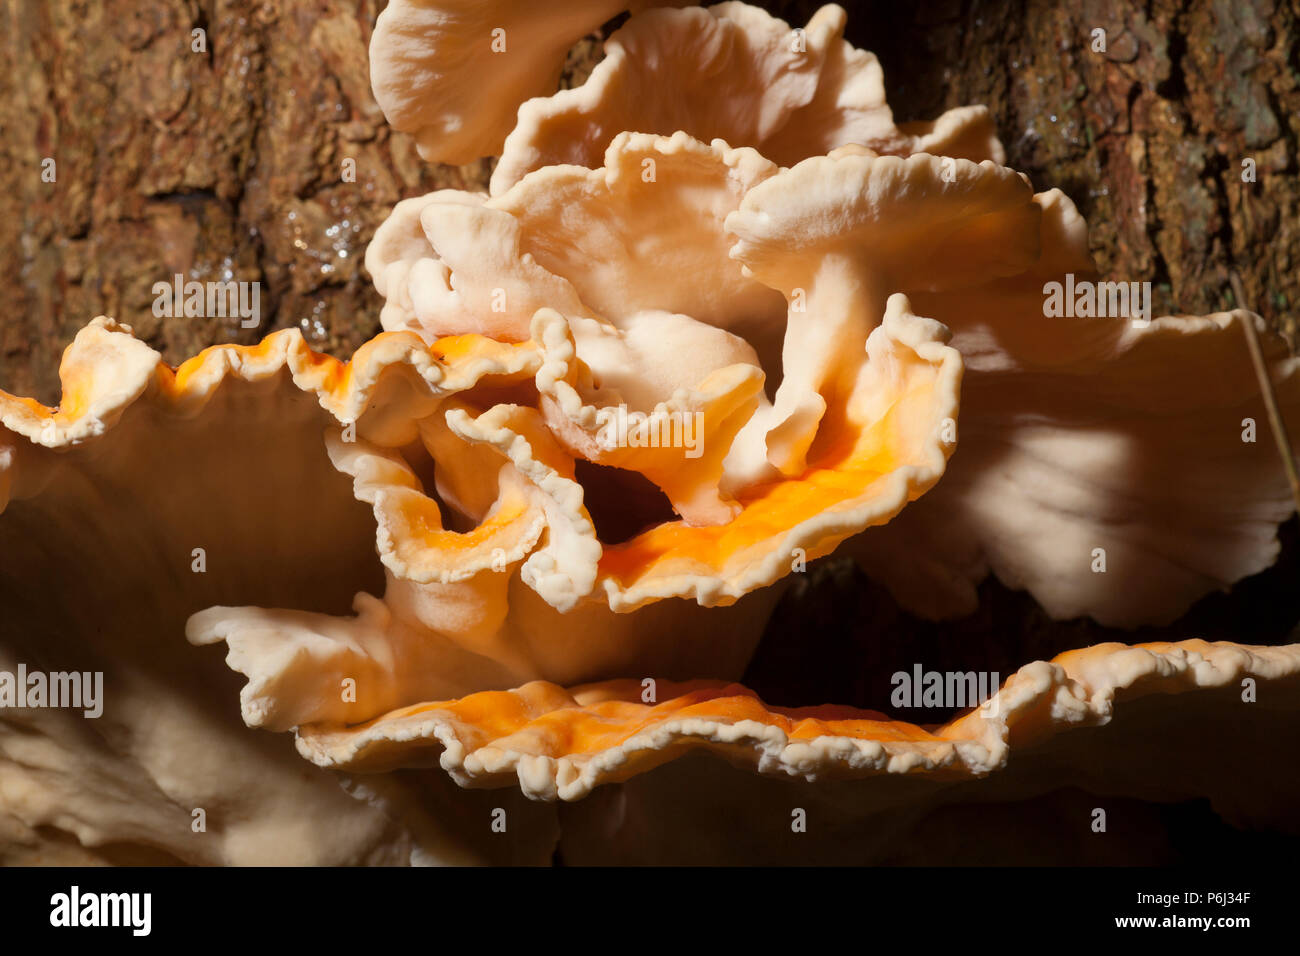 Pollo di boschi funghi, Laetiporus sulfurei, talvolta chiamato polypore zolfo trovato crescente nella nuova foresta in Hampshire England Regno Unito GB. Il c Foto Stock